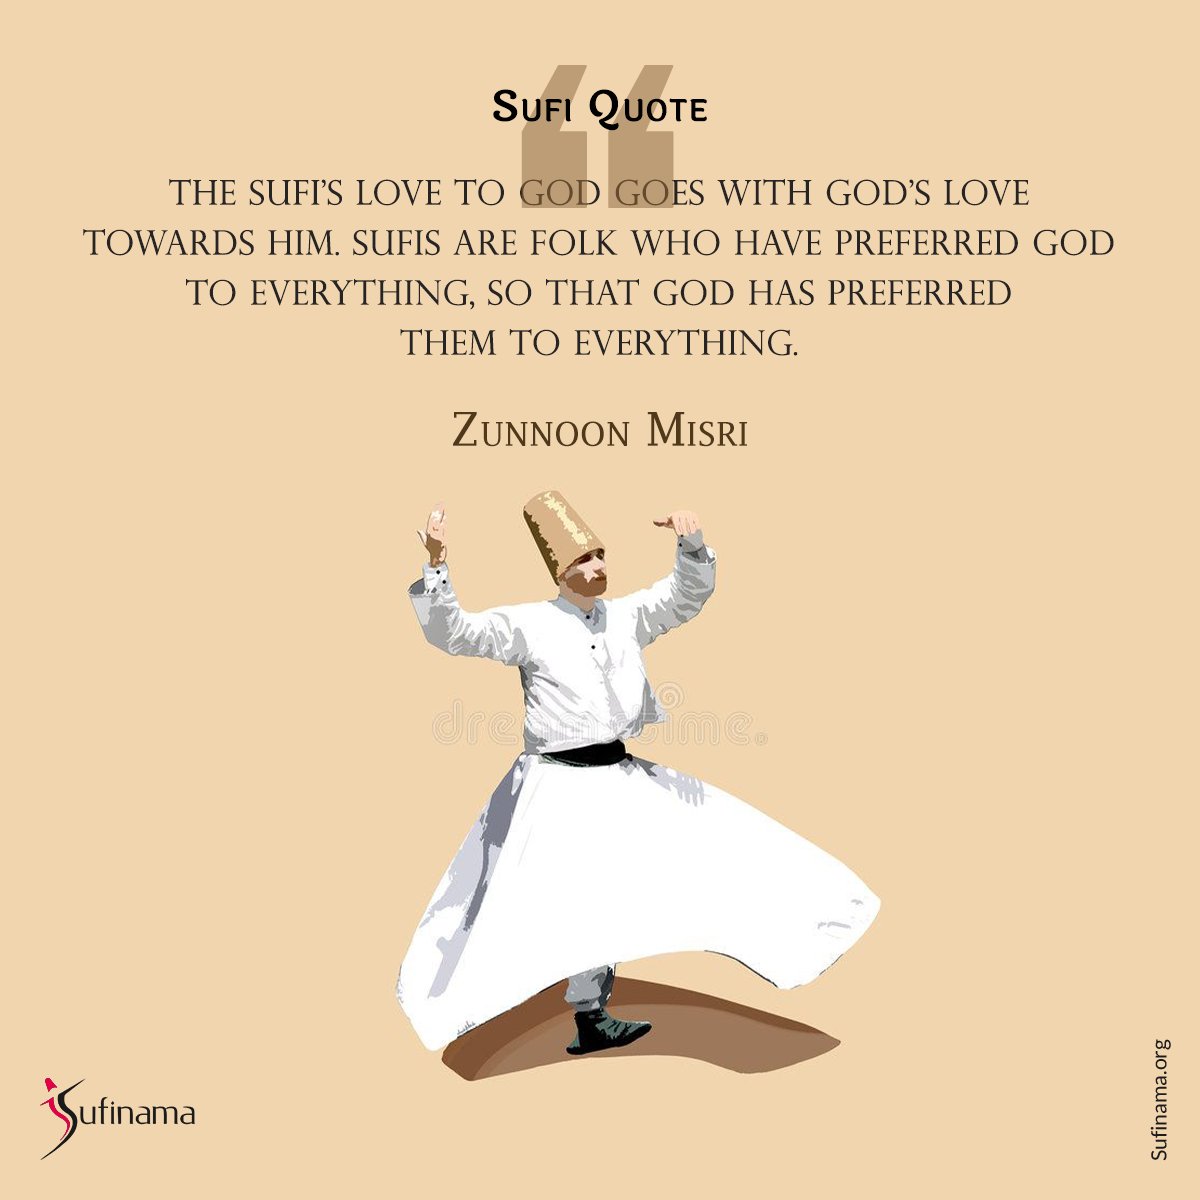 Sufi Quote/ Zunnon Misri

#sufinama #sufism #sufi #sufiquotes